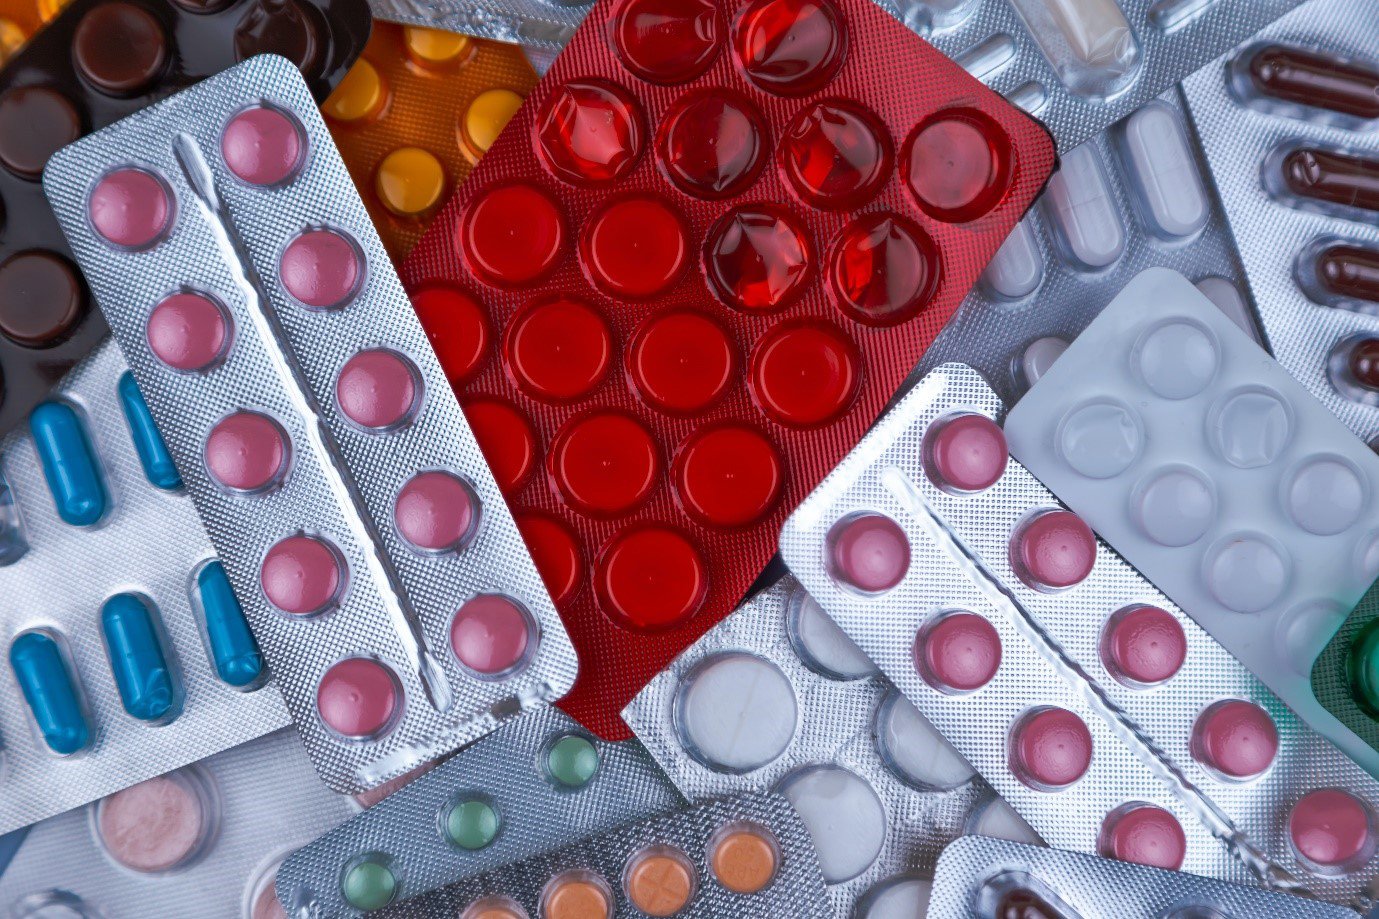 an assortment of medication